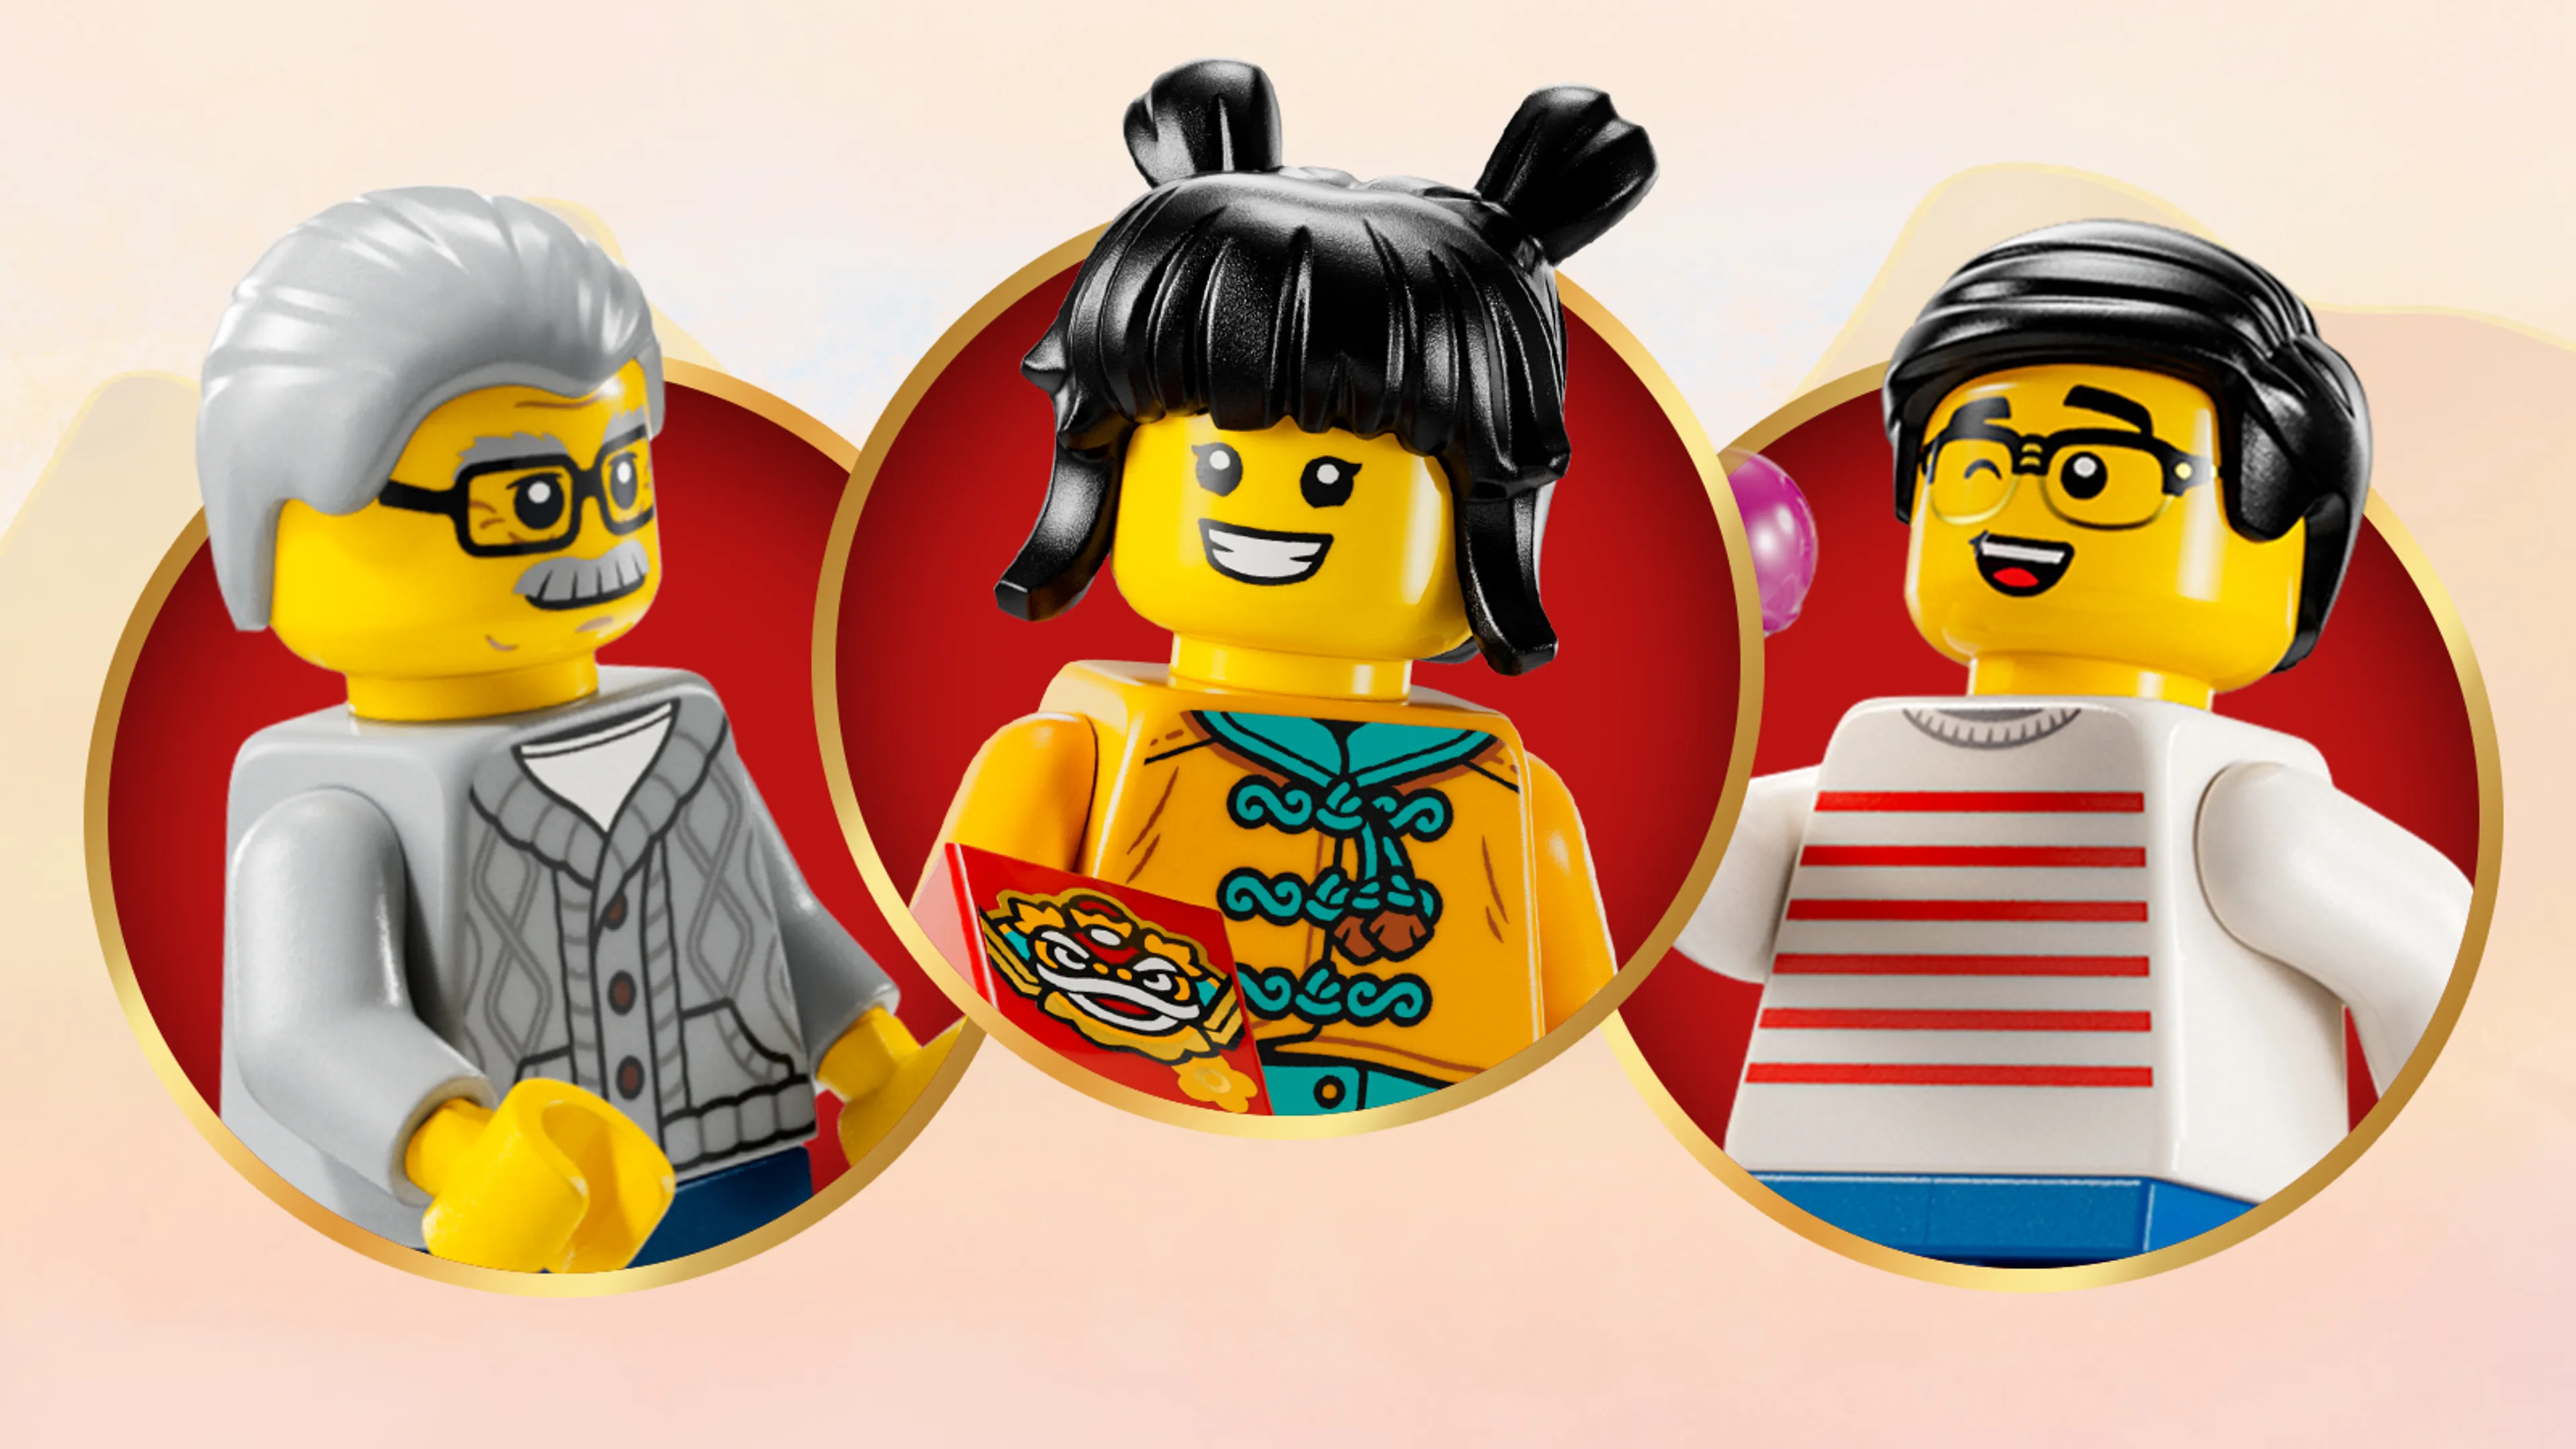 LEGO characters